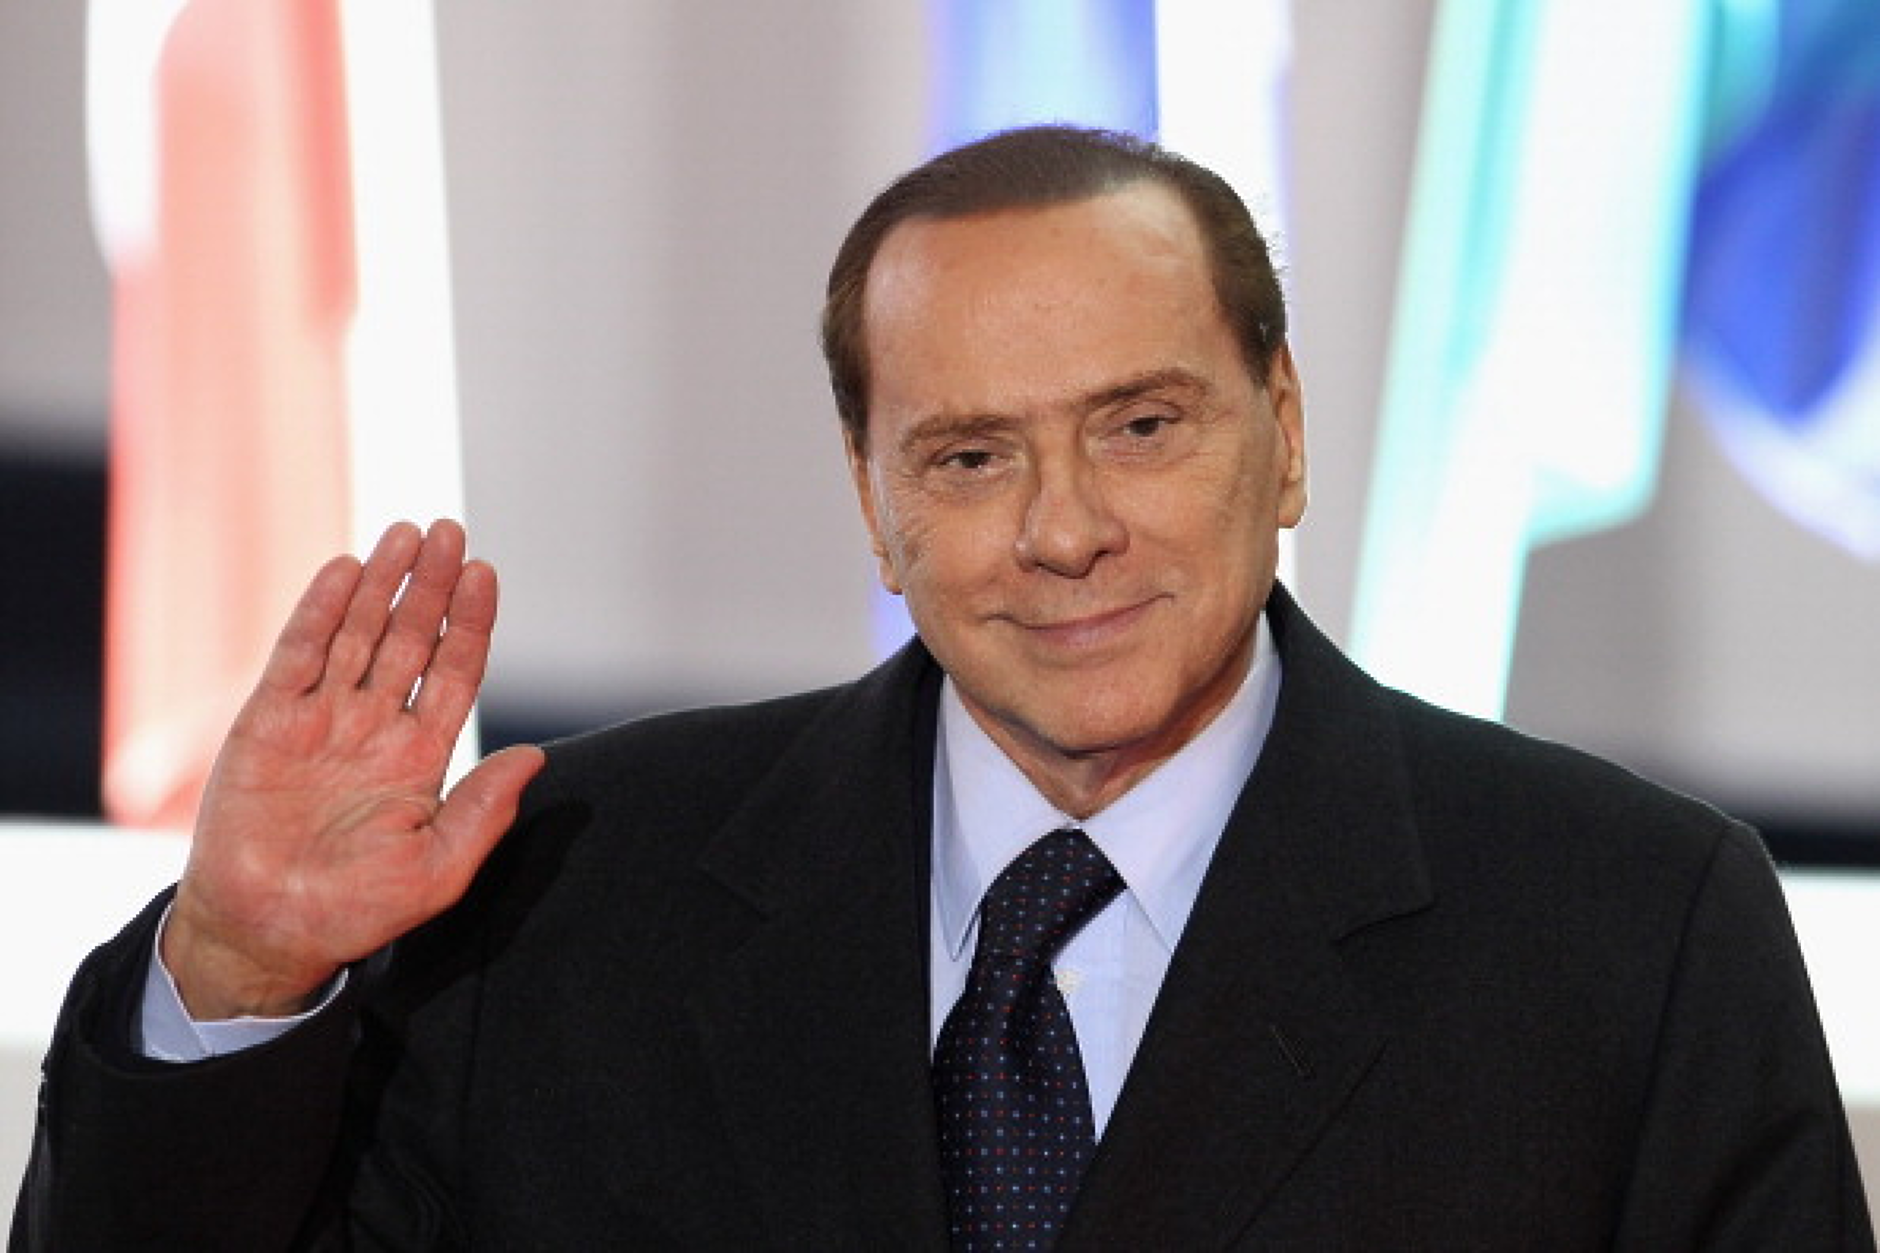 Ден на национален траур в Италия за погребението на Берлускони